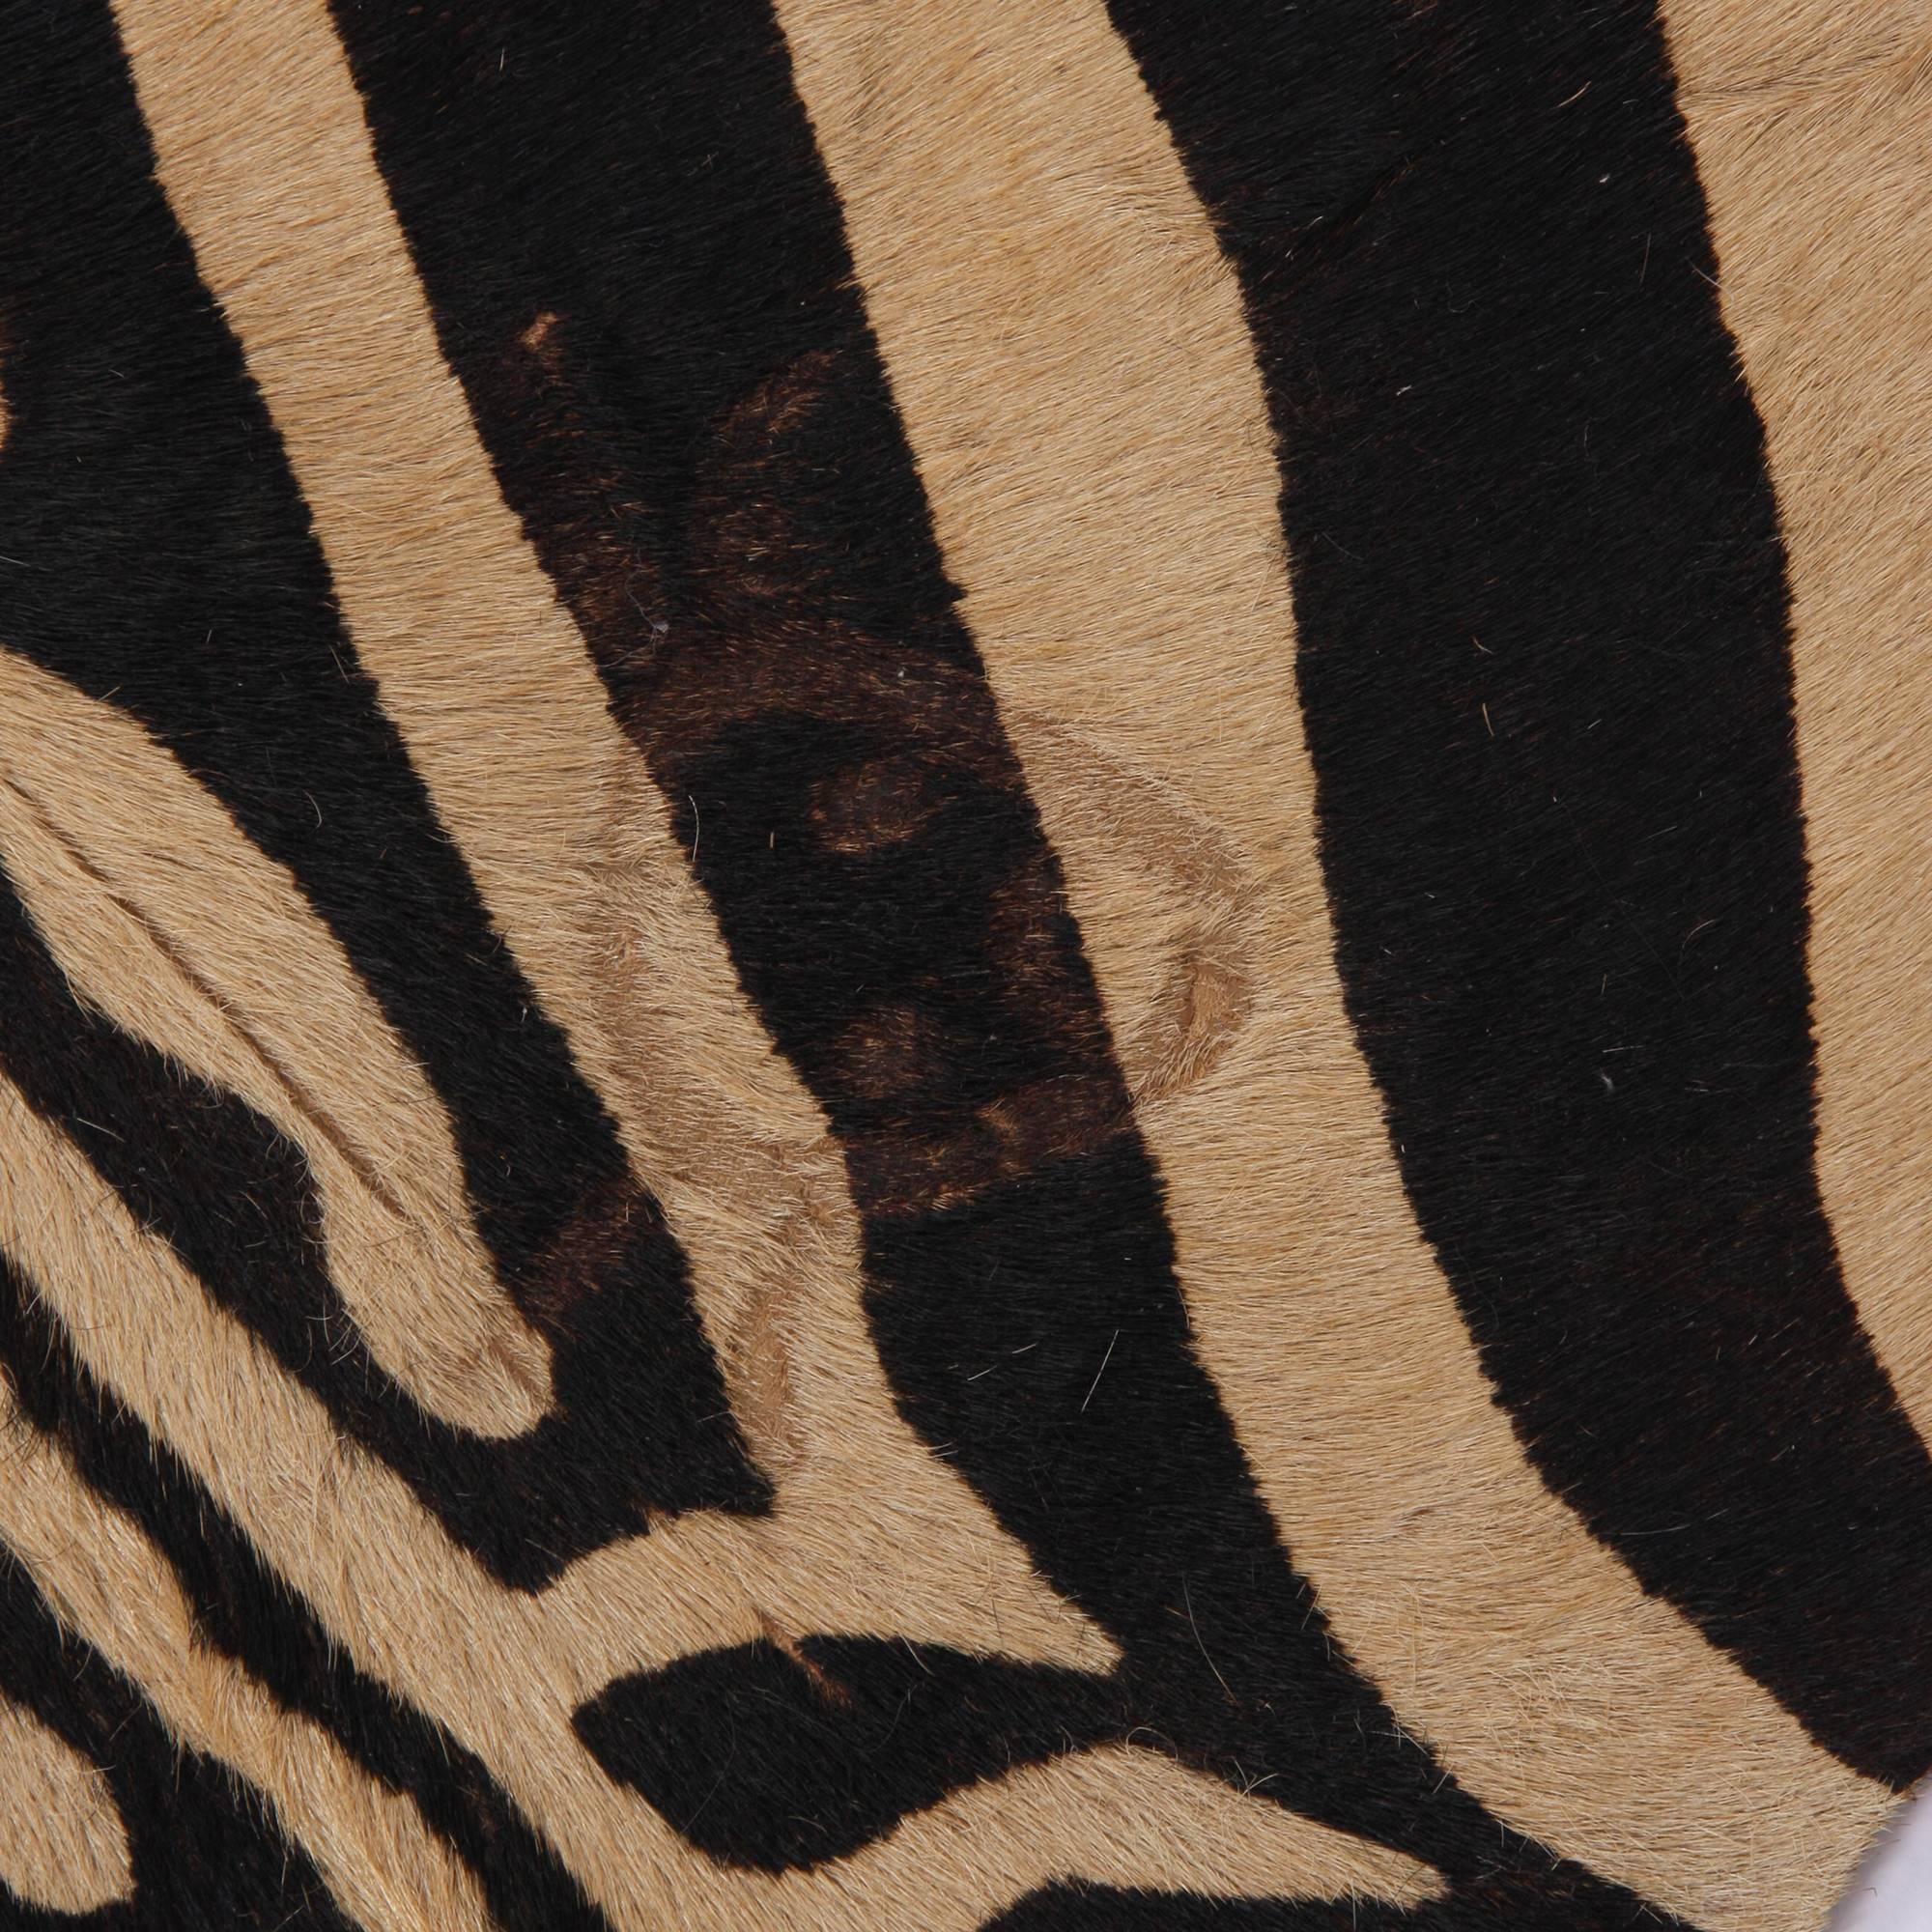 African Zebra Print Rug